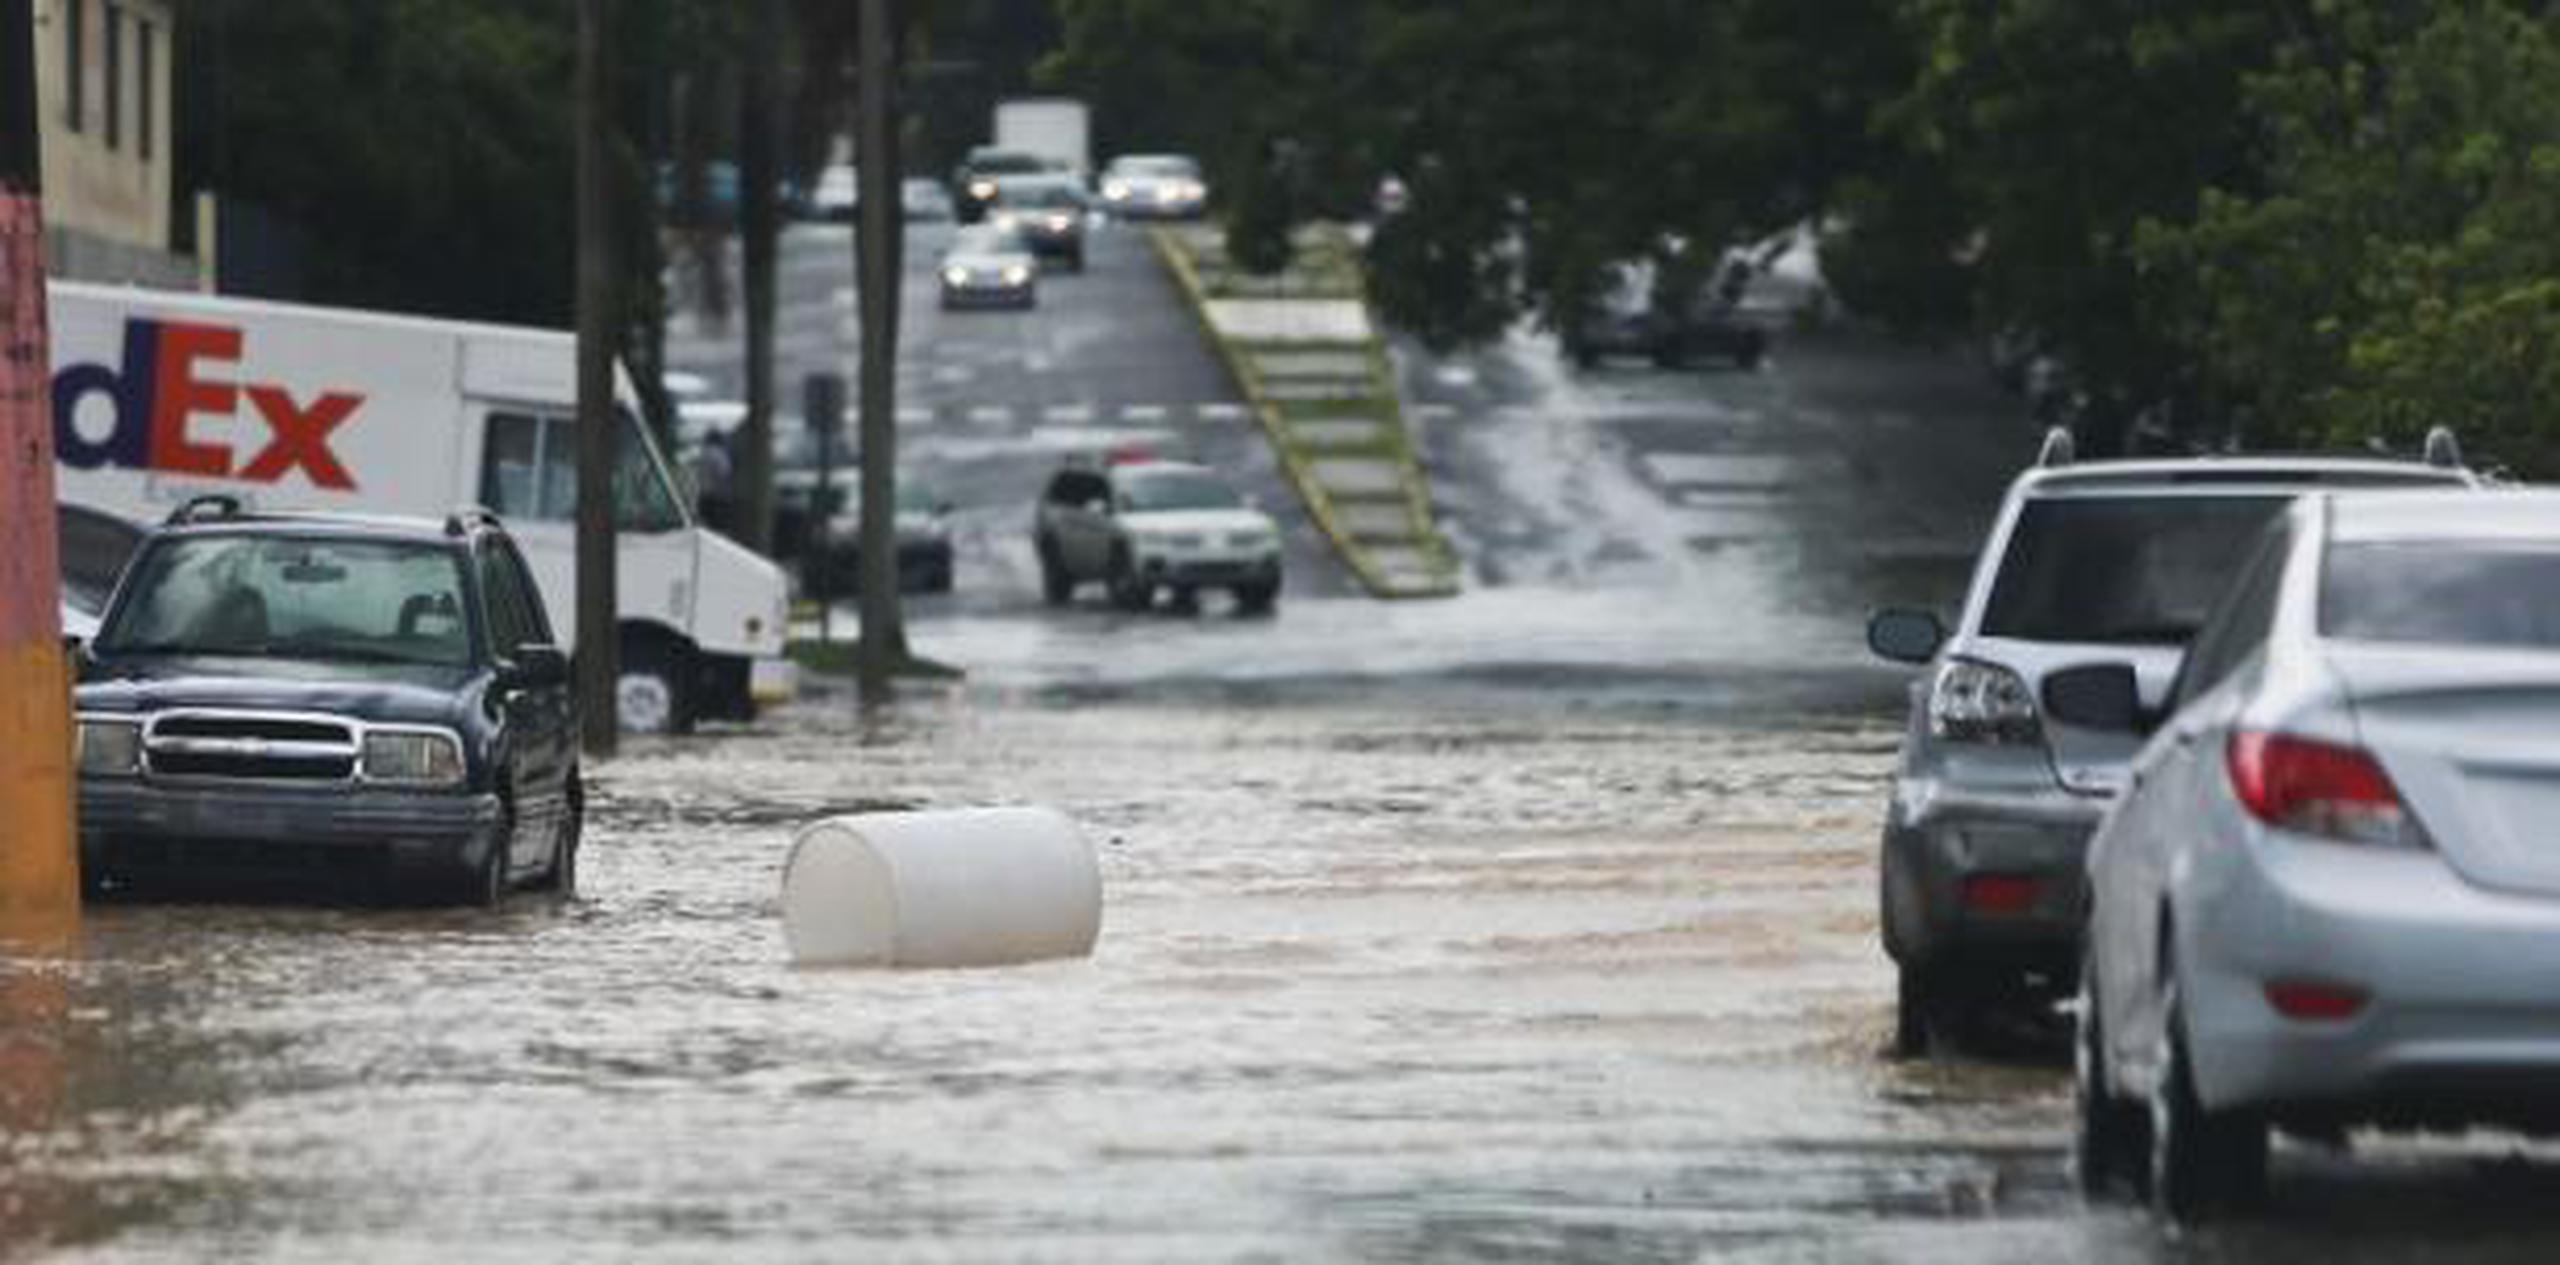 Meteorología recomienda no cruzar carreteras inundadas. (Archivo)